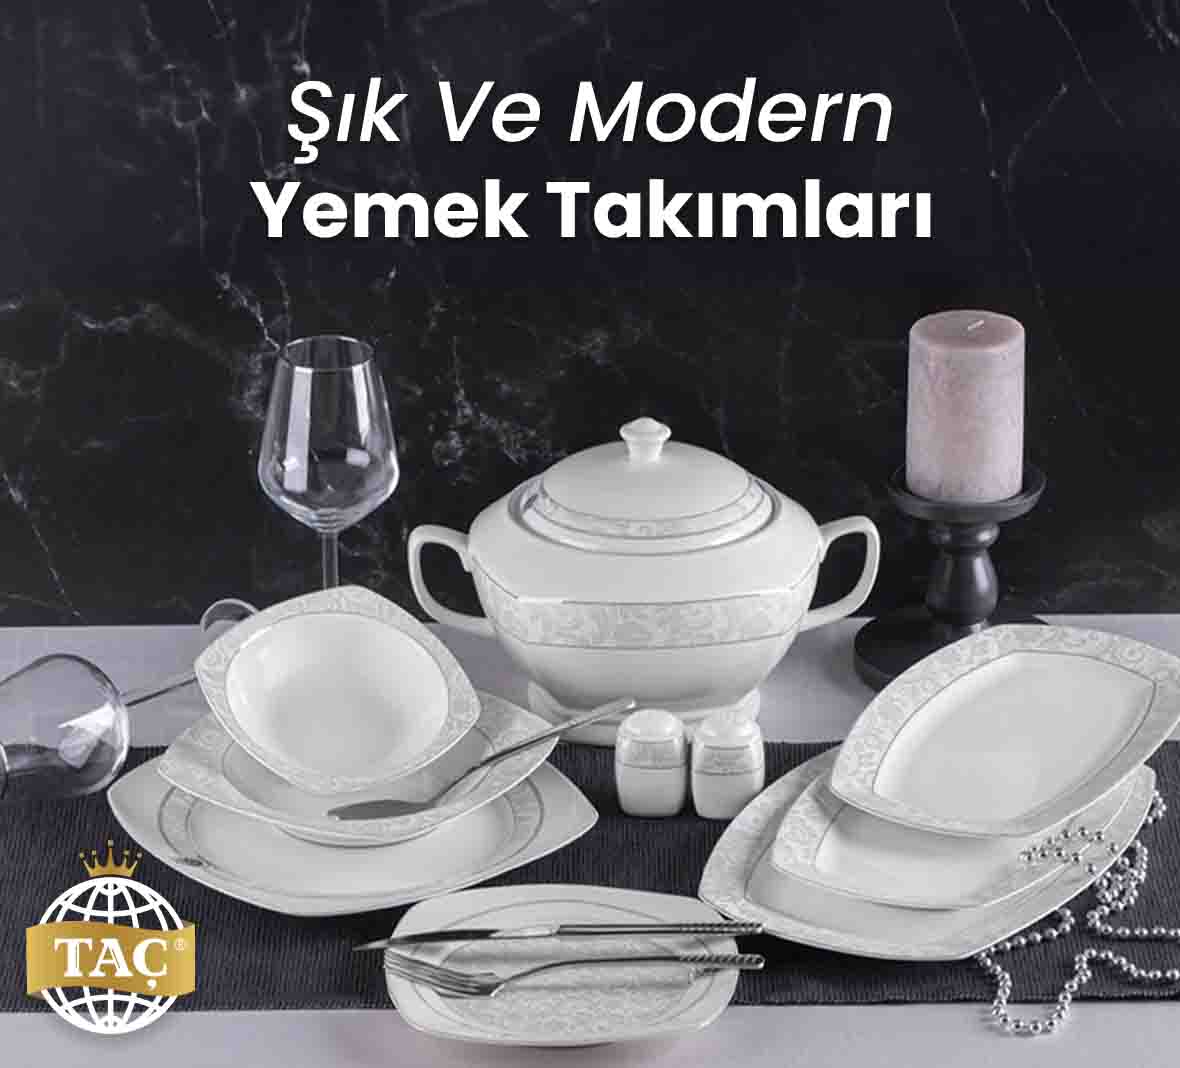 Şık ve Modern Yemek Takımları - Tacev.com